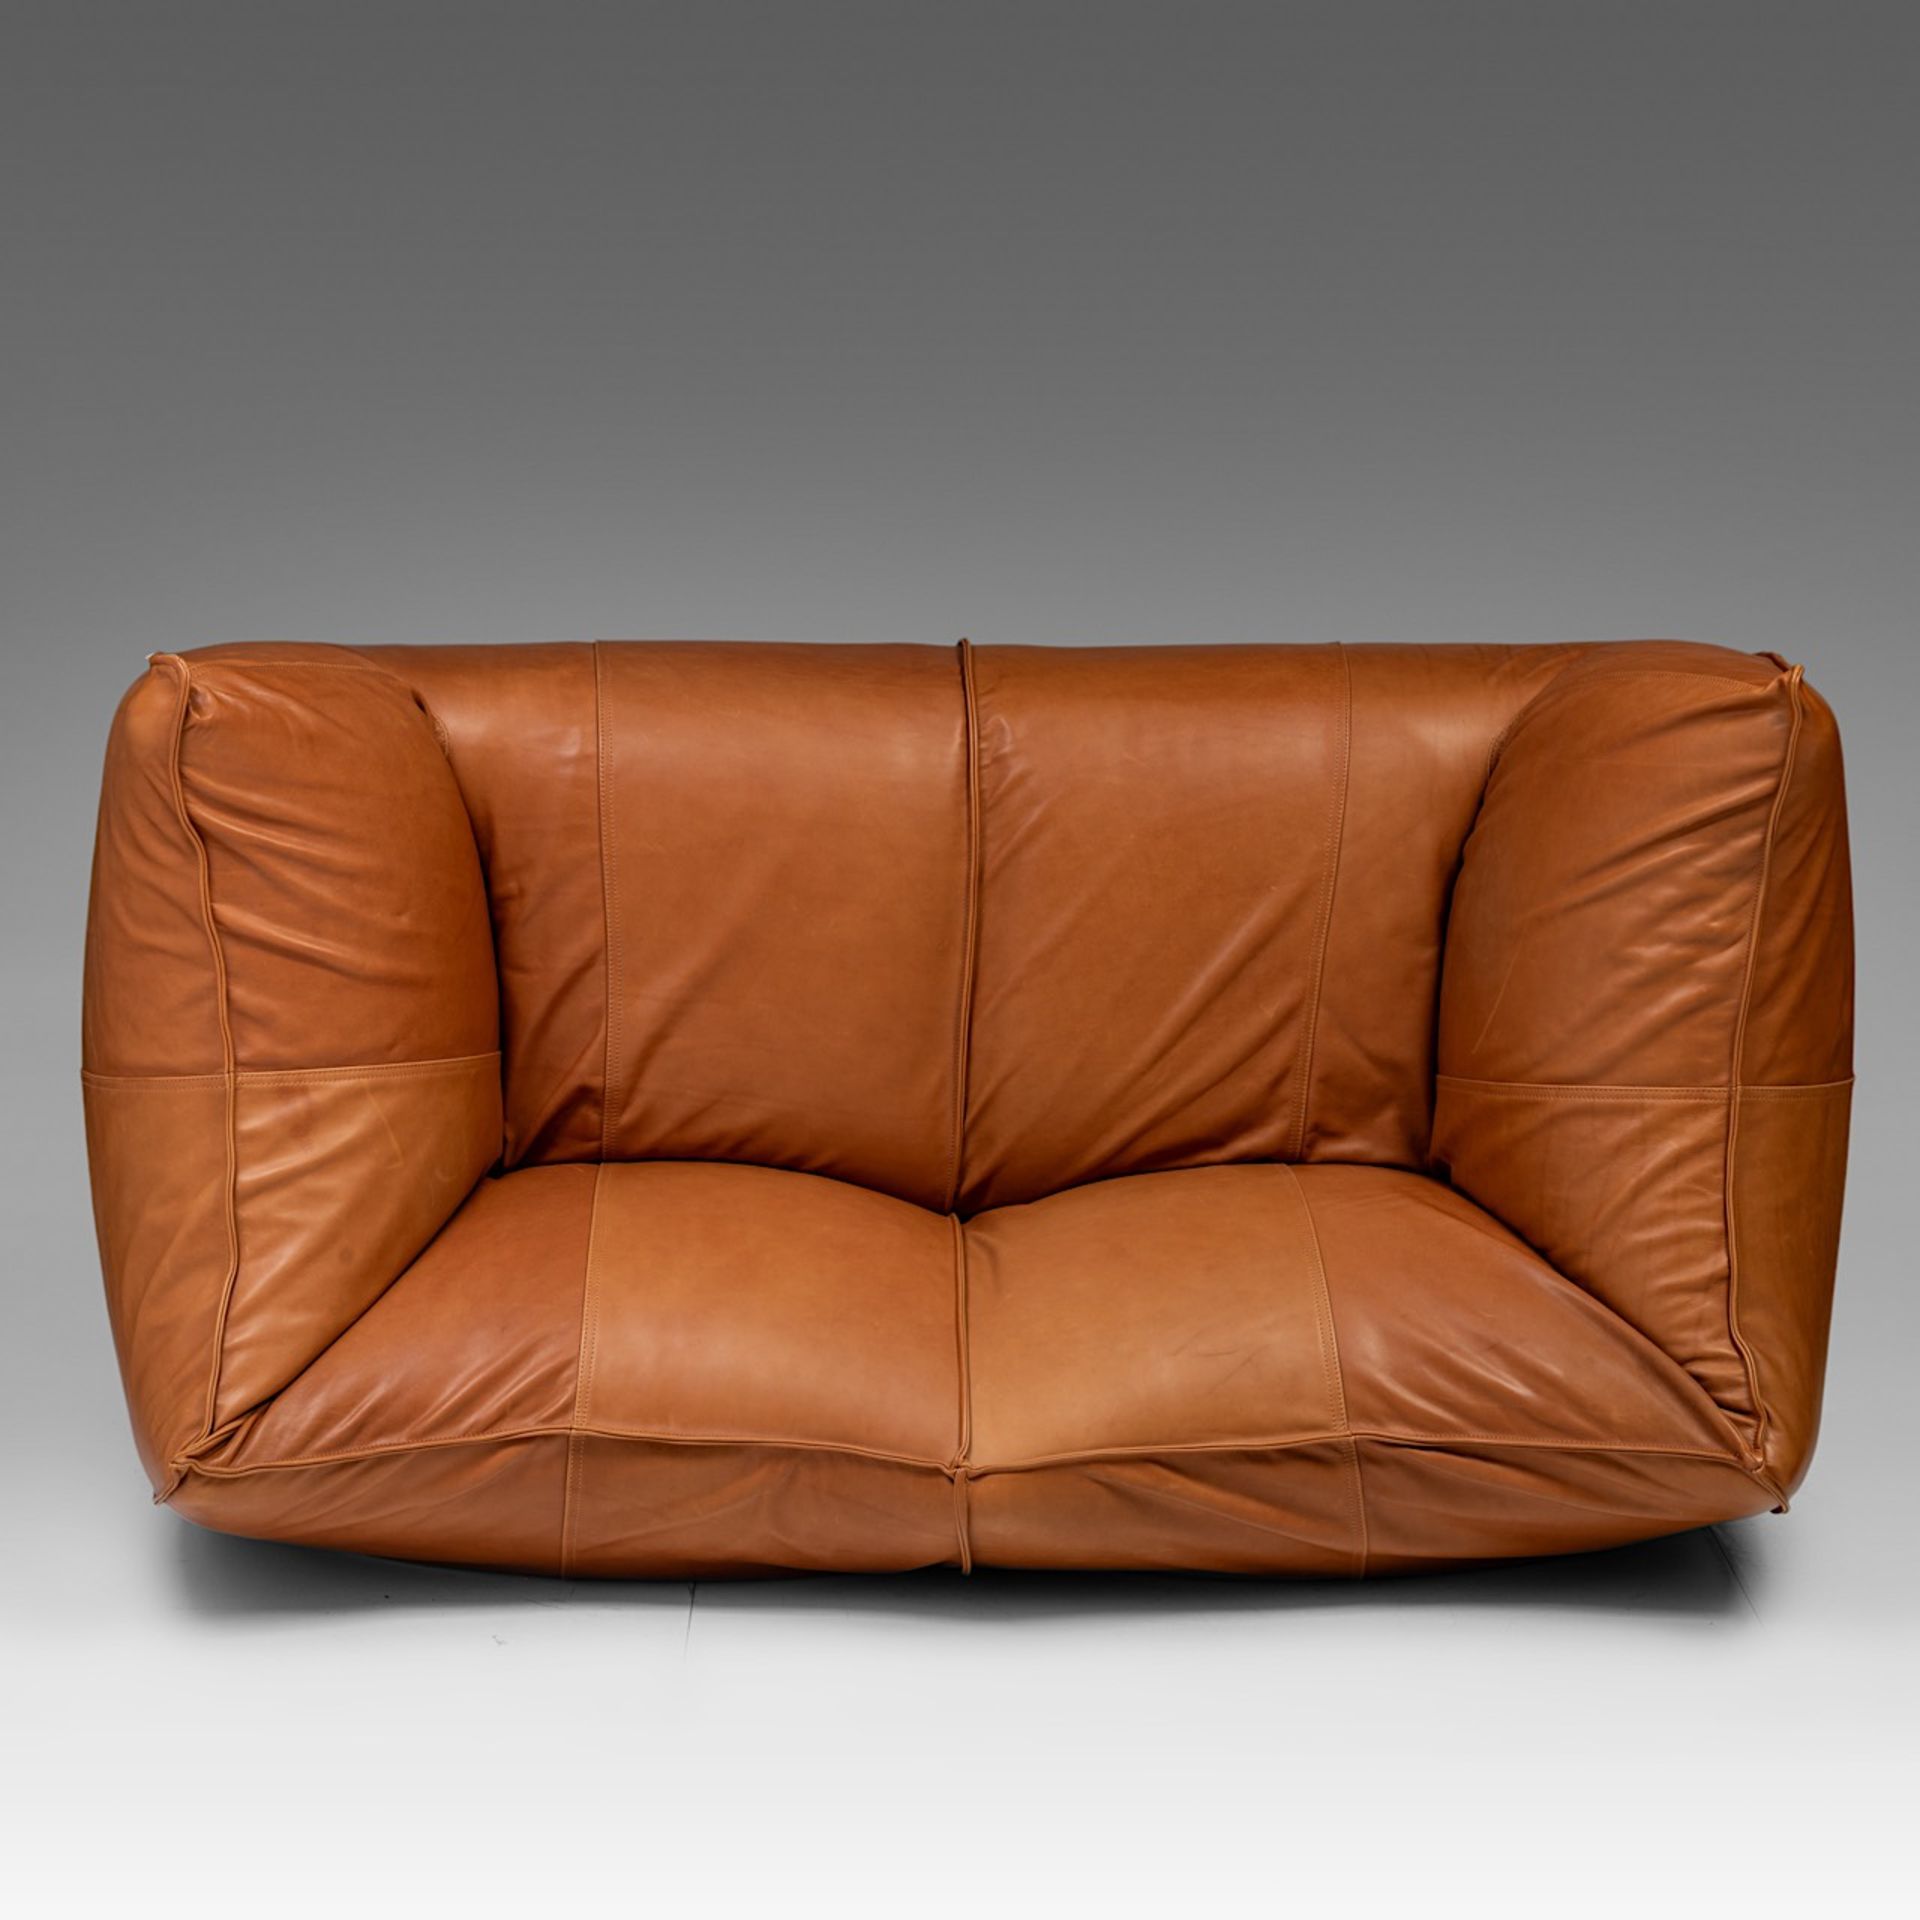 A Mario Bellini 'Le Bambole' sofa for B&B Italia, H 74 - W 165 - D 80 cm - Image 6 of 9